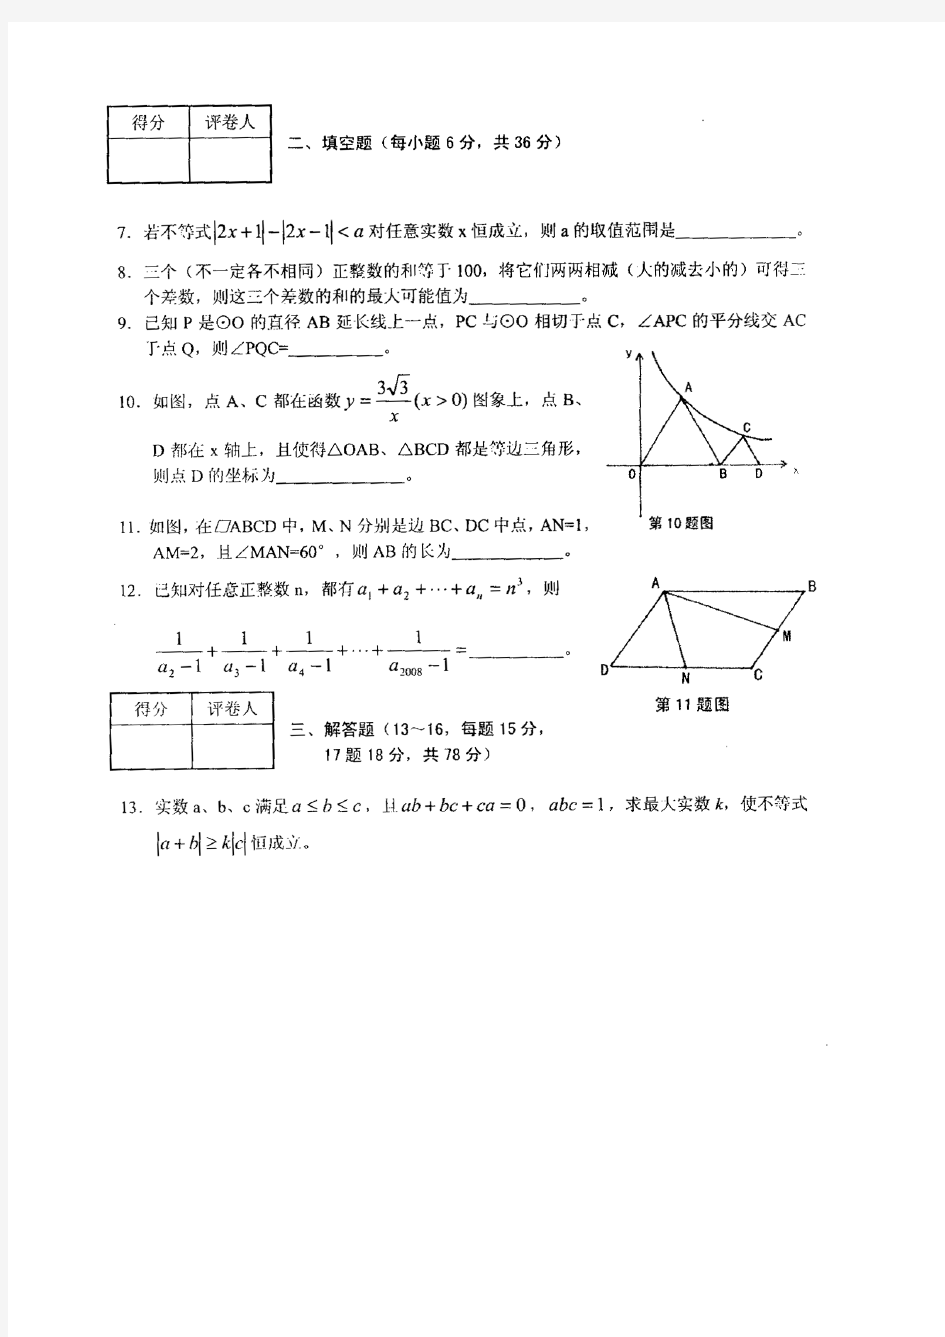 芜湖一中理科实验班数学试题及答案